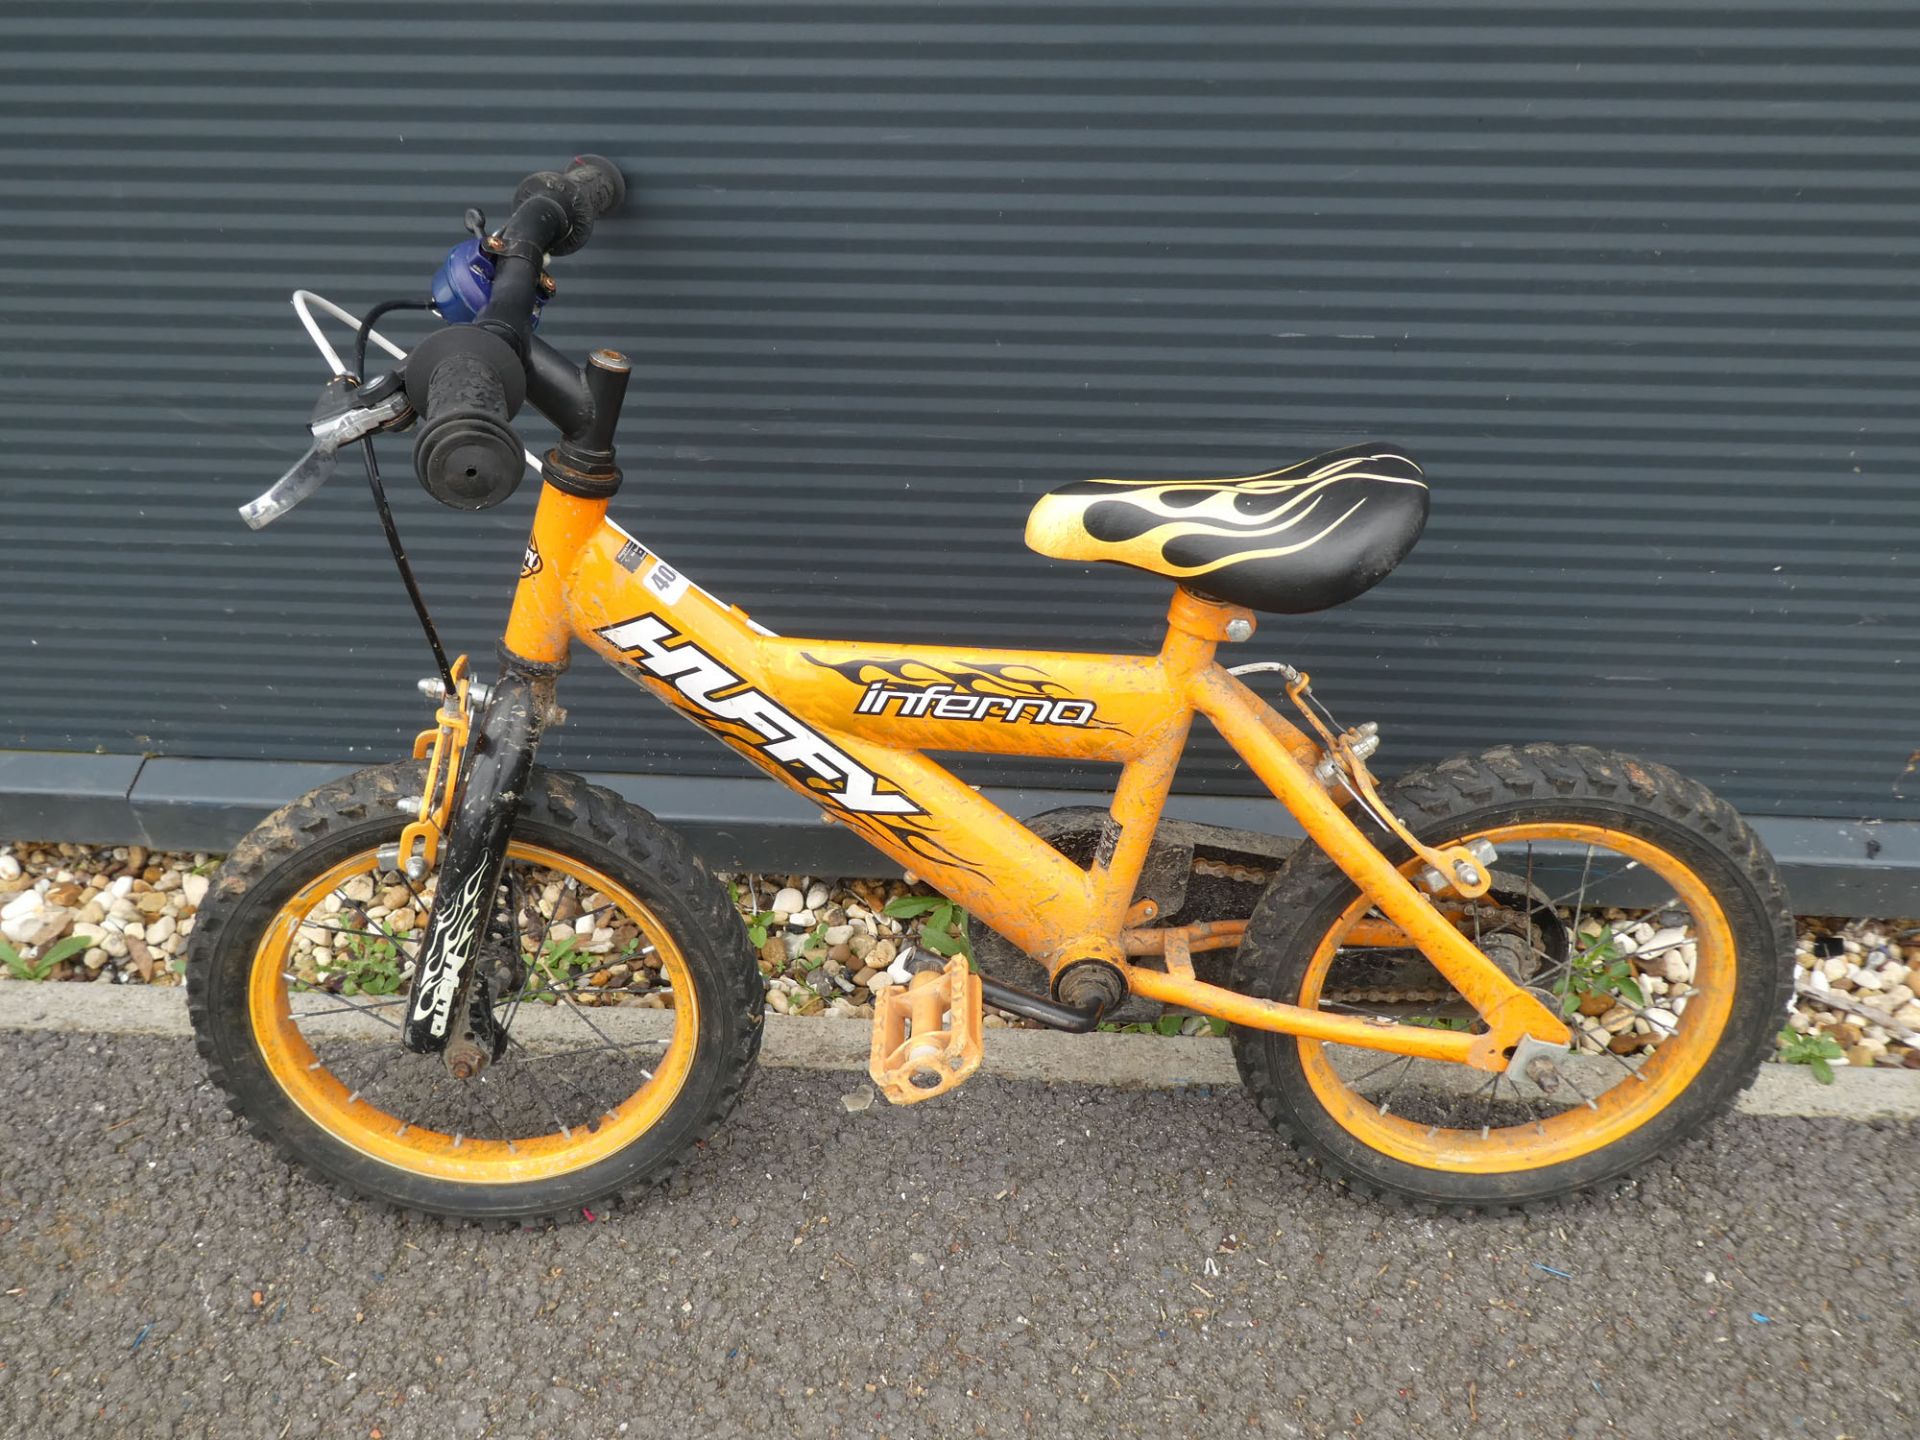 Small orange child's bike